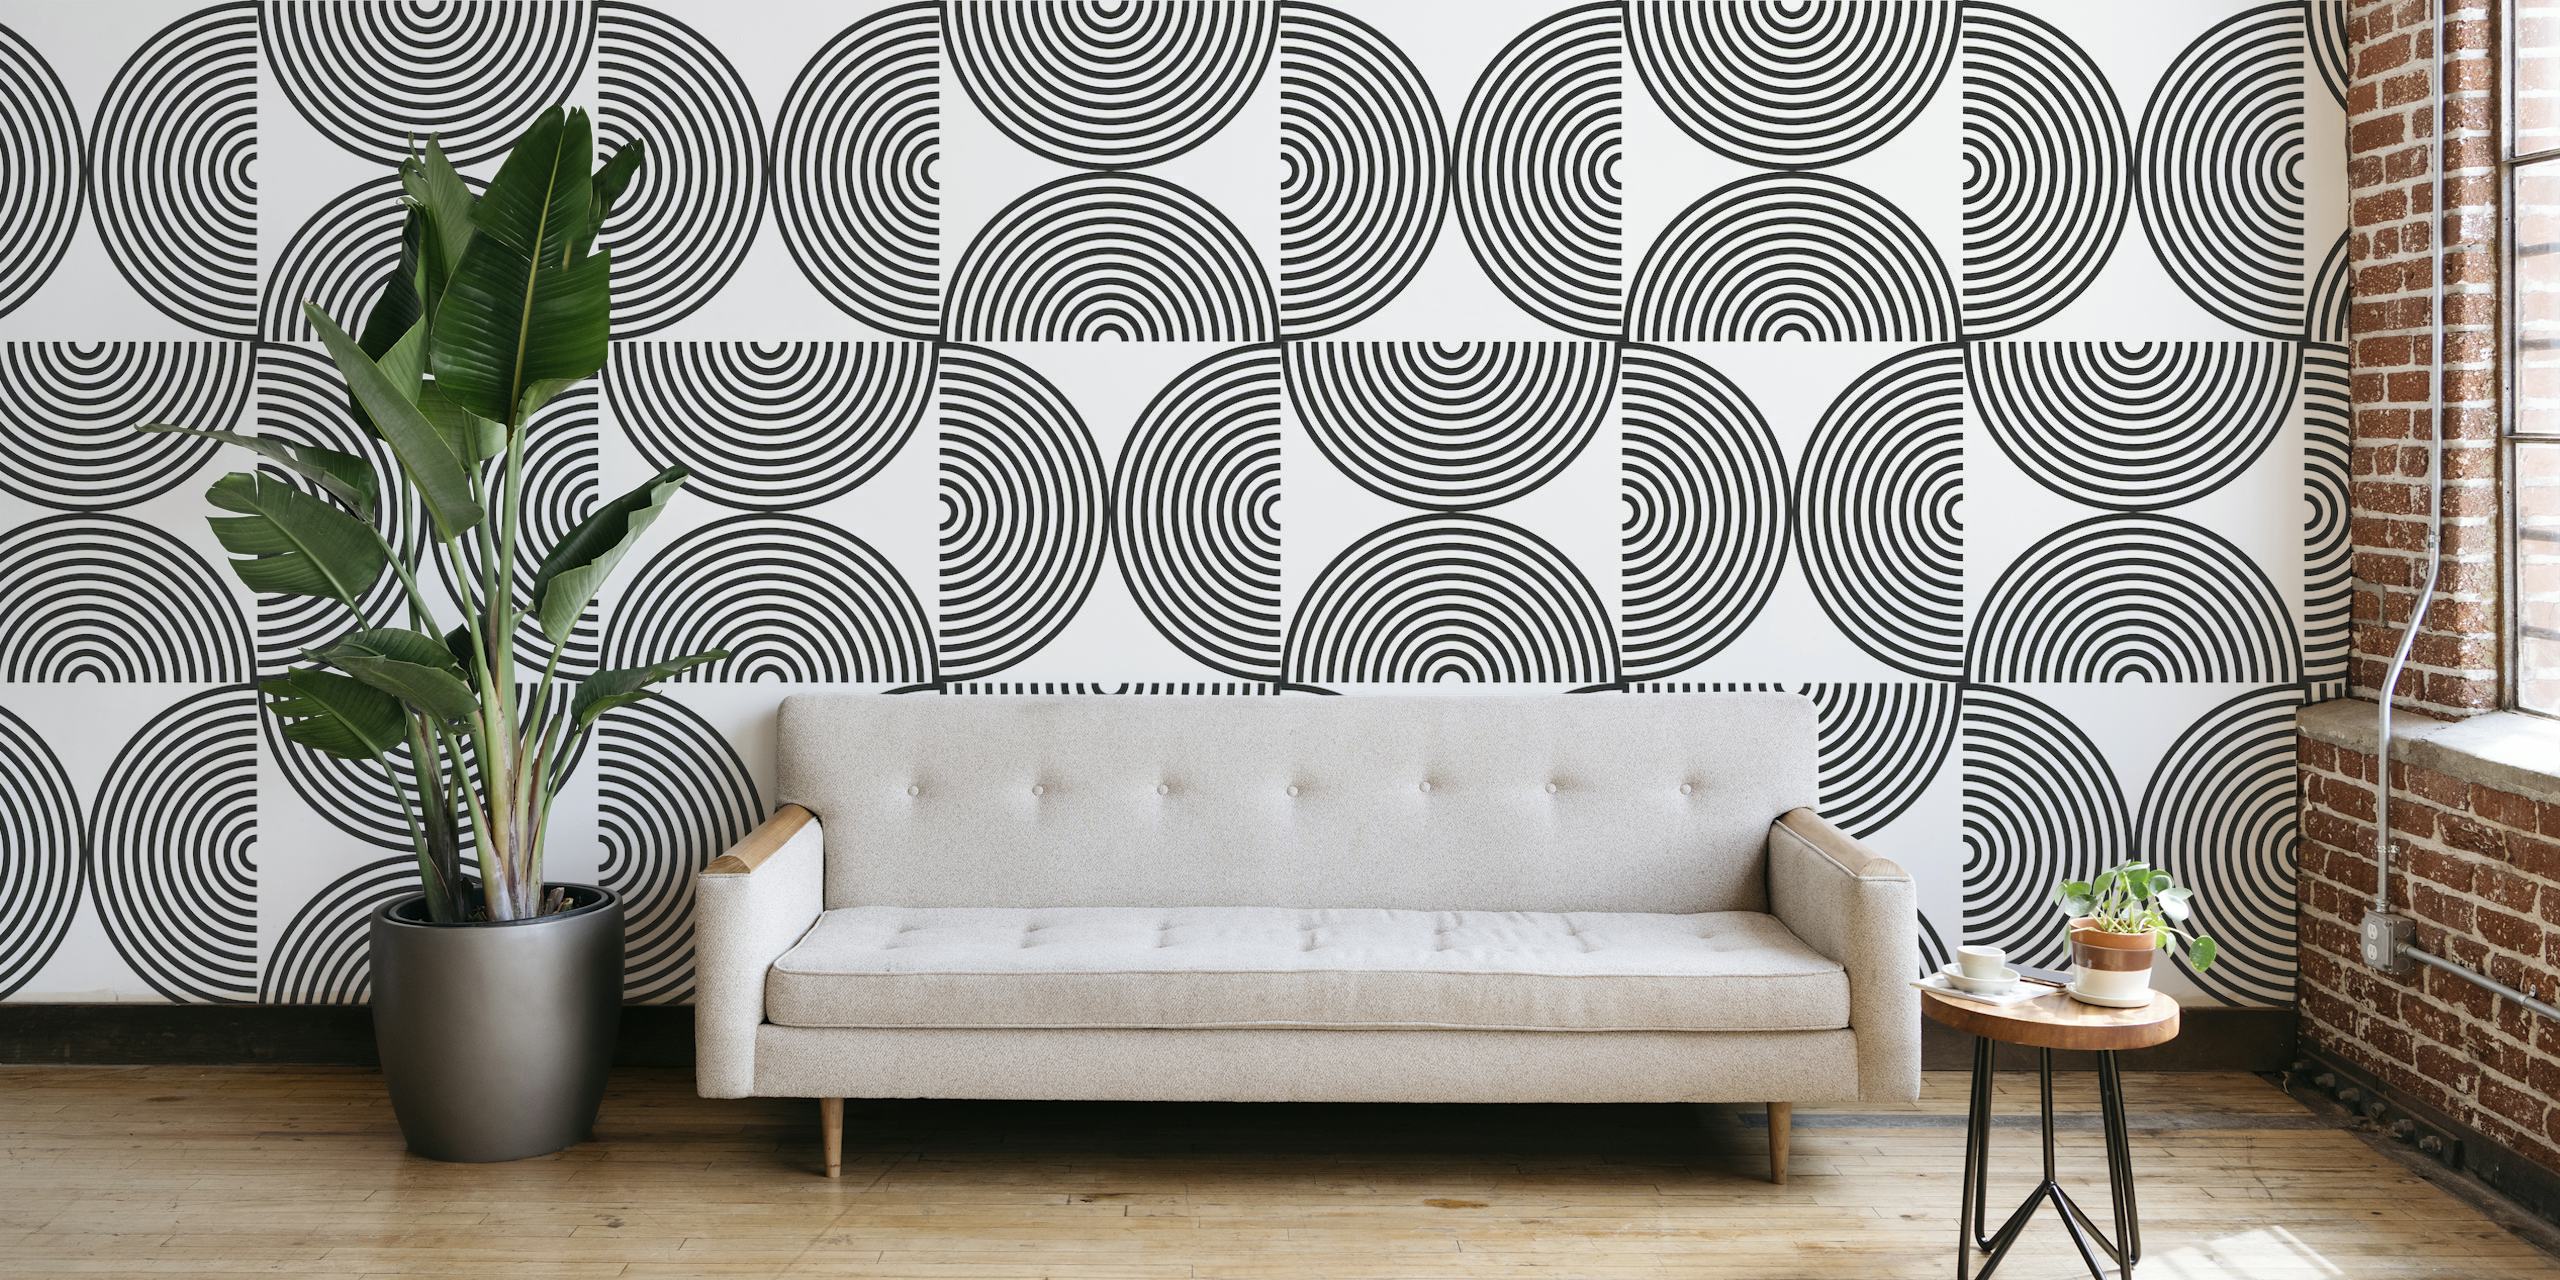 Fotomural con estampado de líneas y círculos geométricos en escala de grises